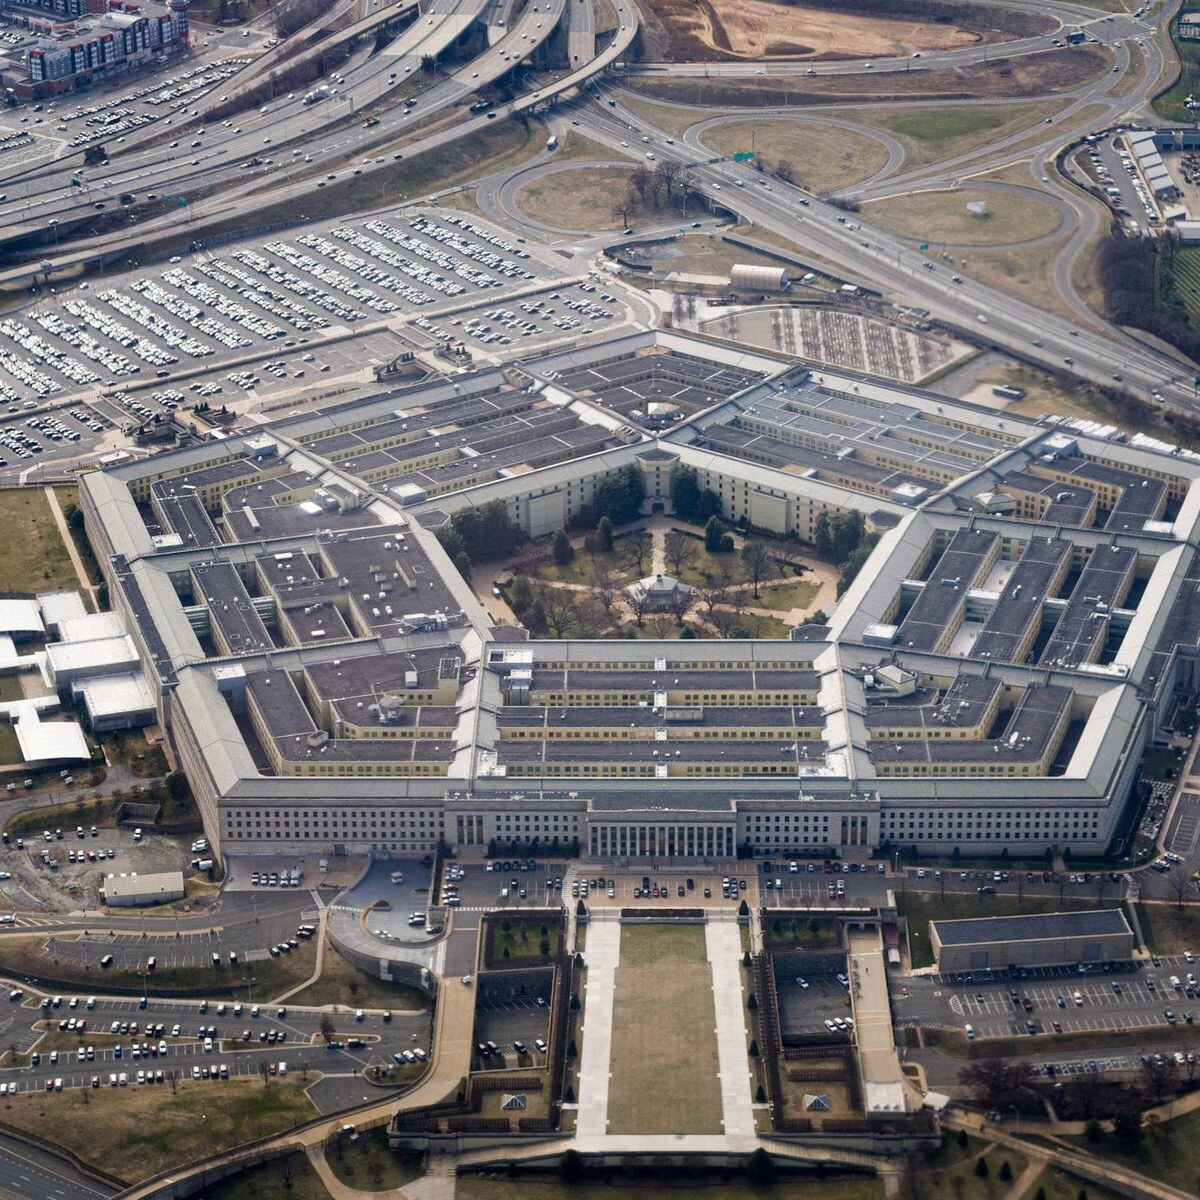 Como documentos ultrassecretos do Pentágono se espalharam na internet